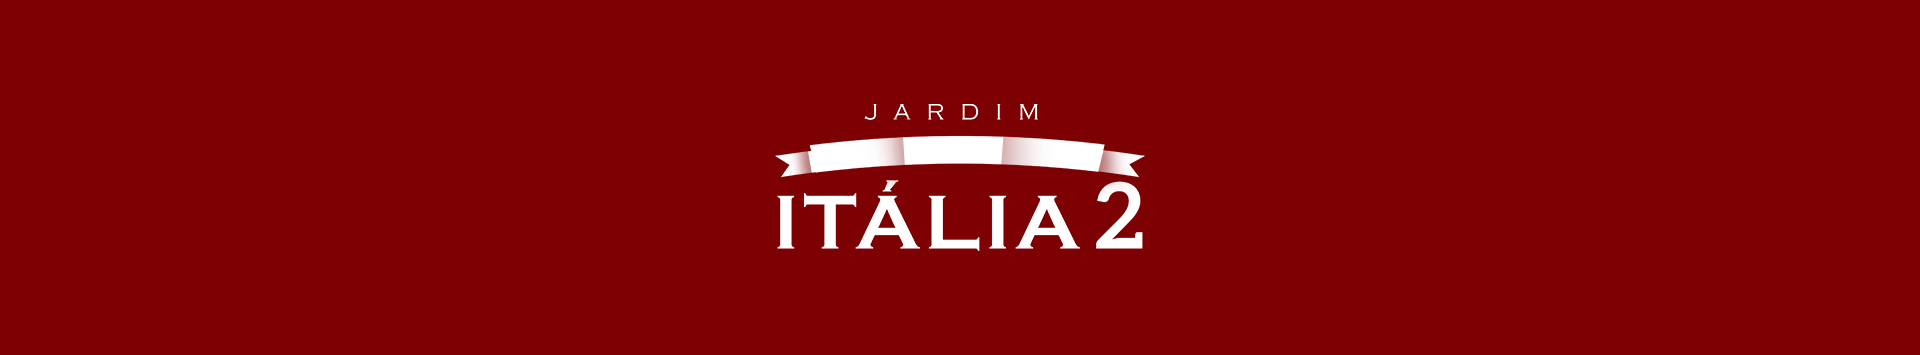 JARDIM ITALIA II